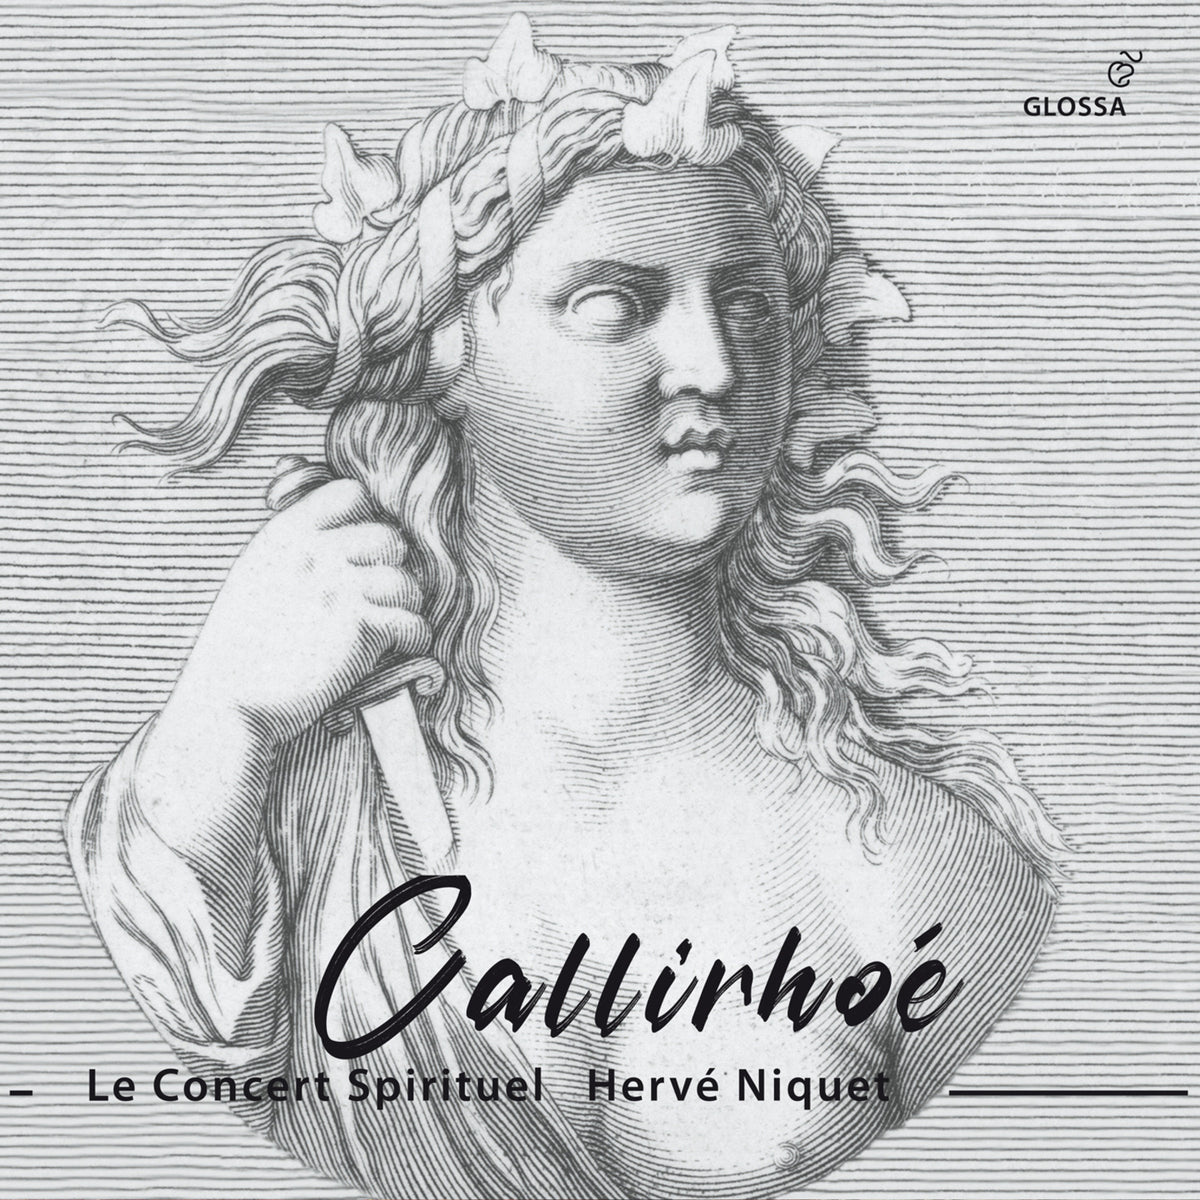 Le Concert Spirituel; Herve Niquet - Andre Cardinal Destouches: Callirhoe (Paris, 1740) - GCD921634